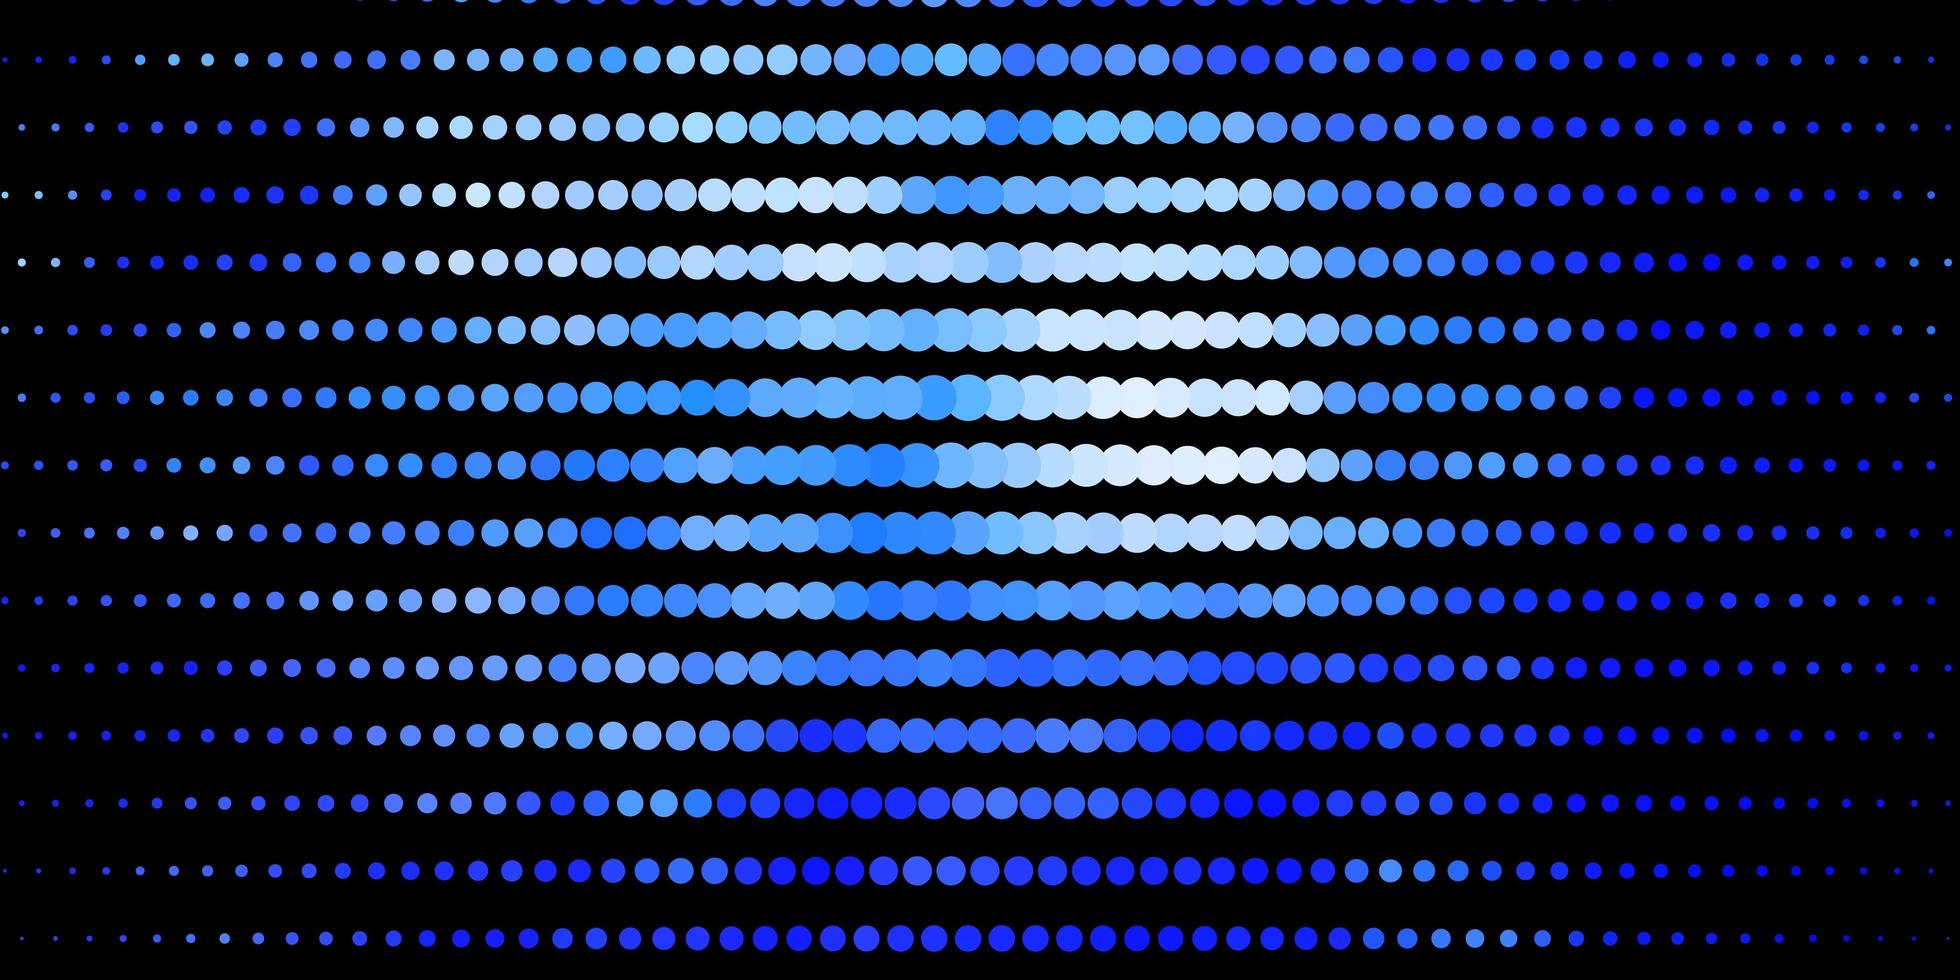 sfondo vettoriale blu scuro con punti.